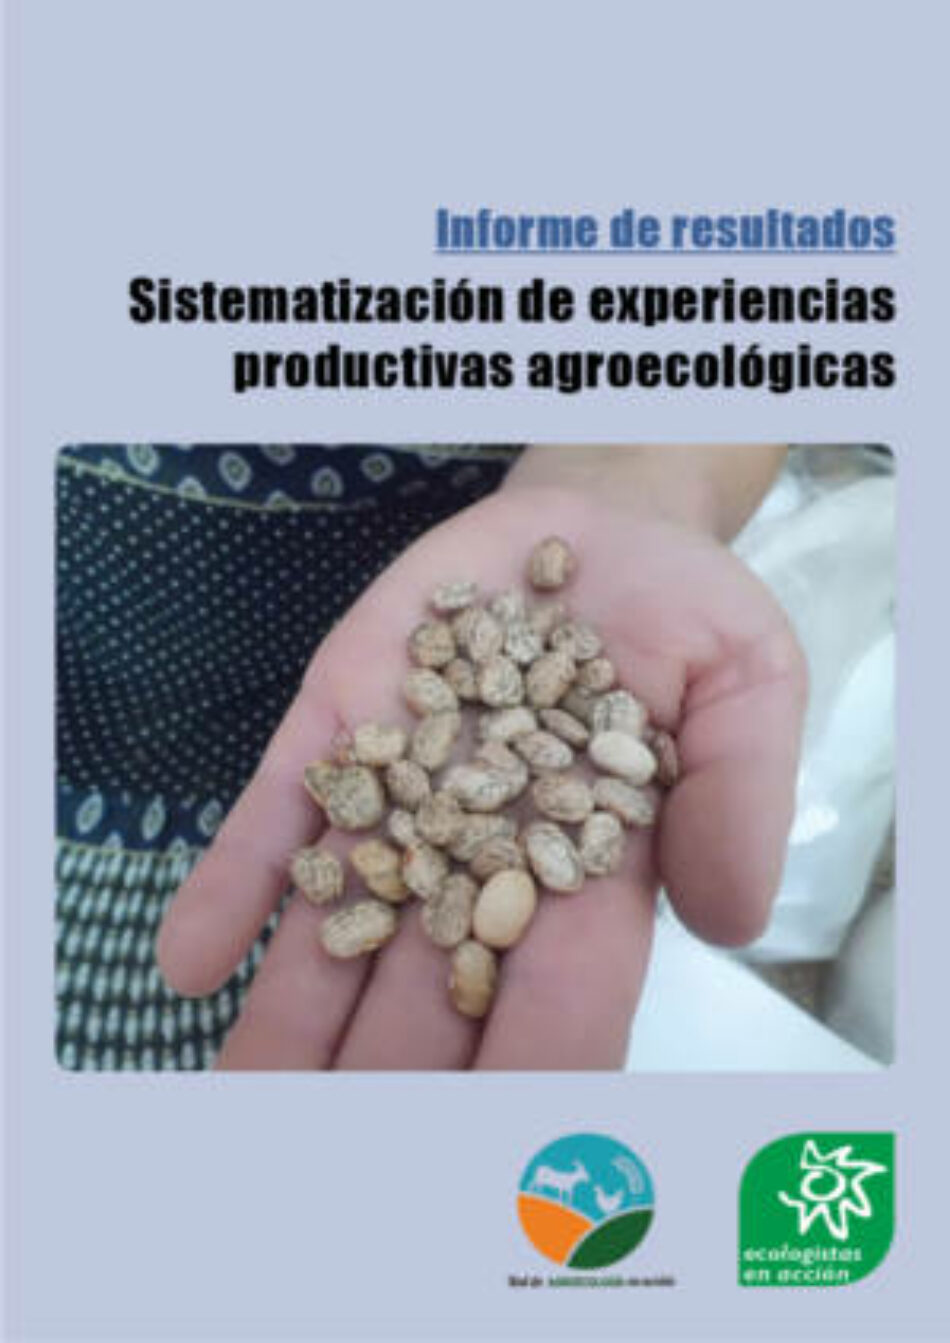 Los proyectos agroecológicos españoles aprueban en sostenibilidad y suspenden en apoyo institucional